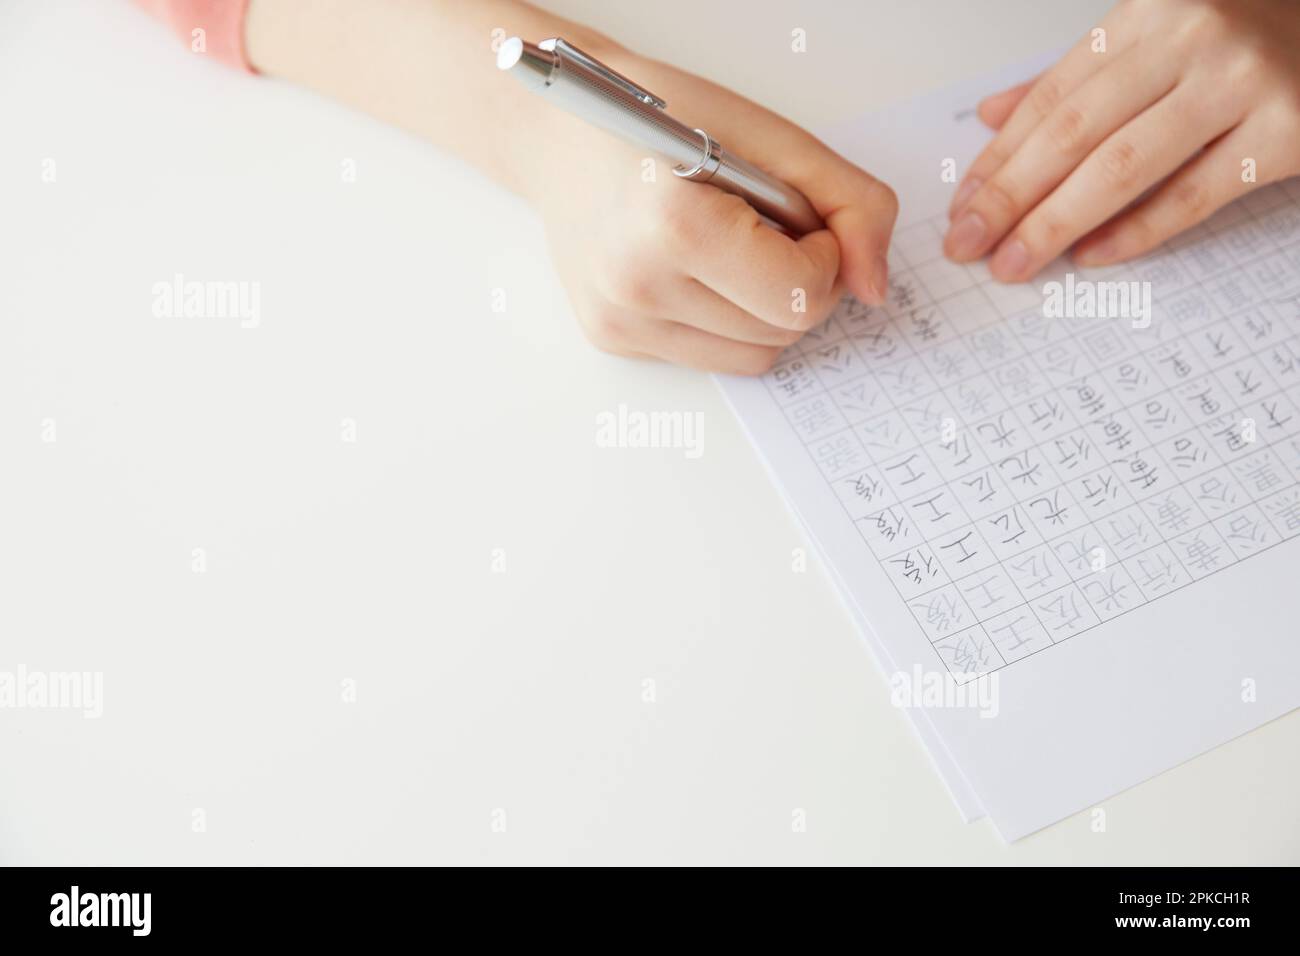 Woman writing Kanji characters on white desk Stock Photo